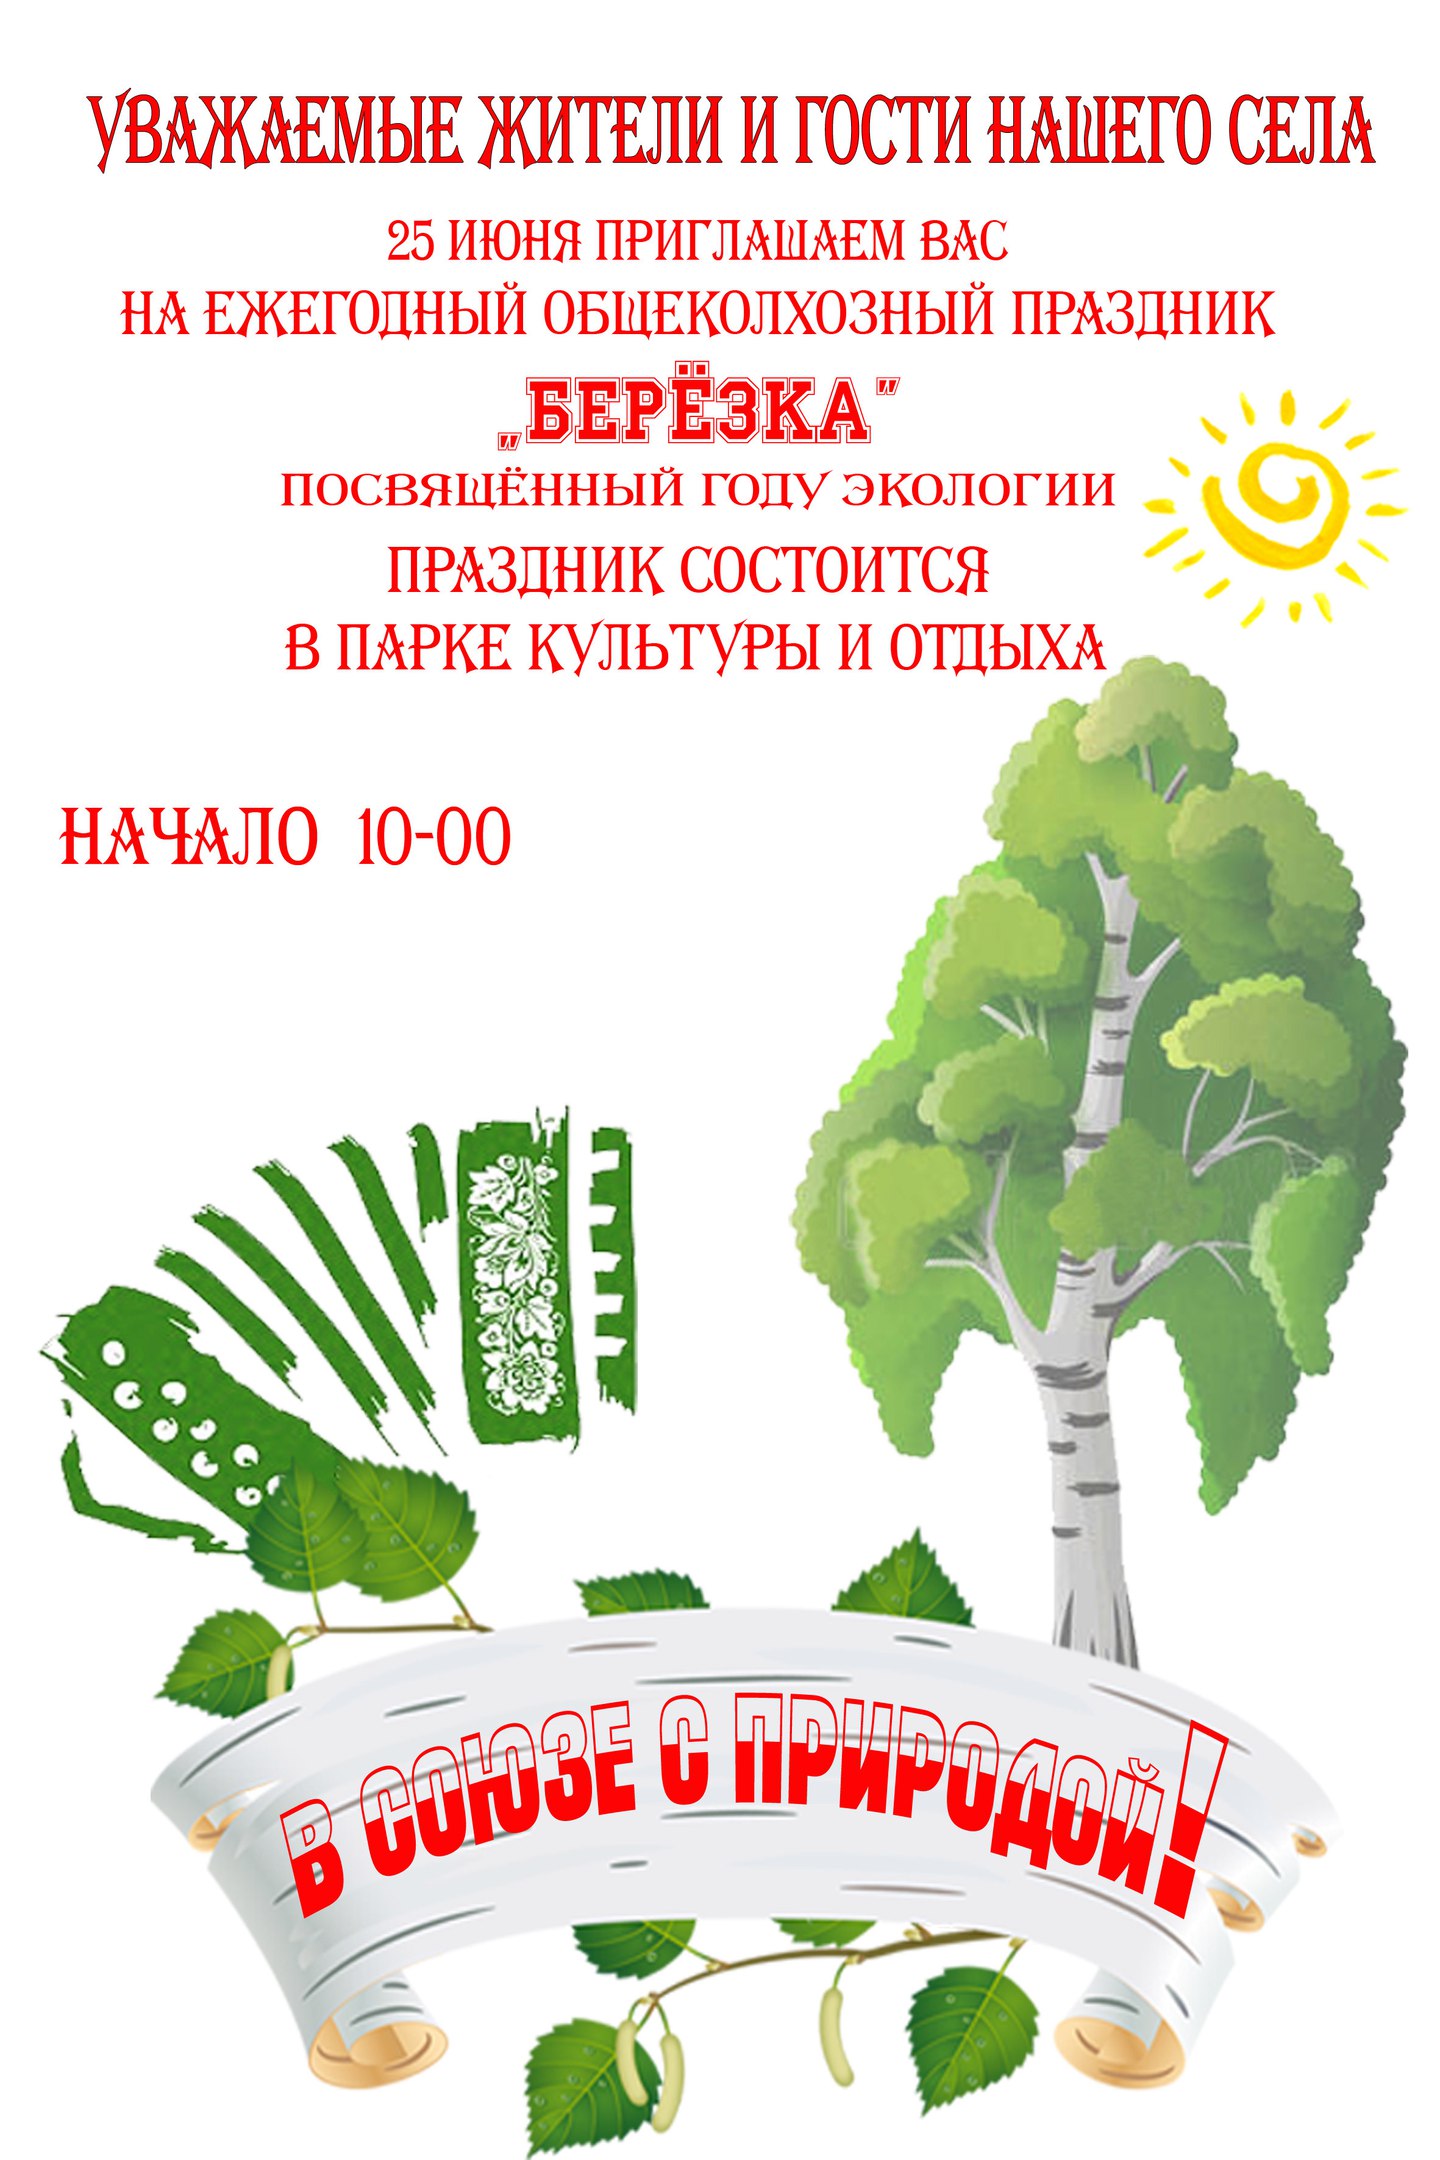 Праздник «Русская березка» в Белгородском районе